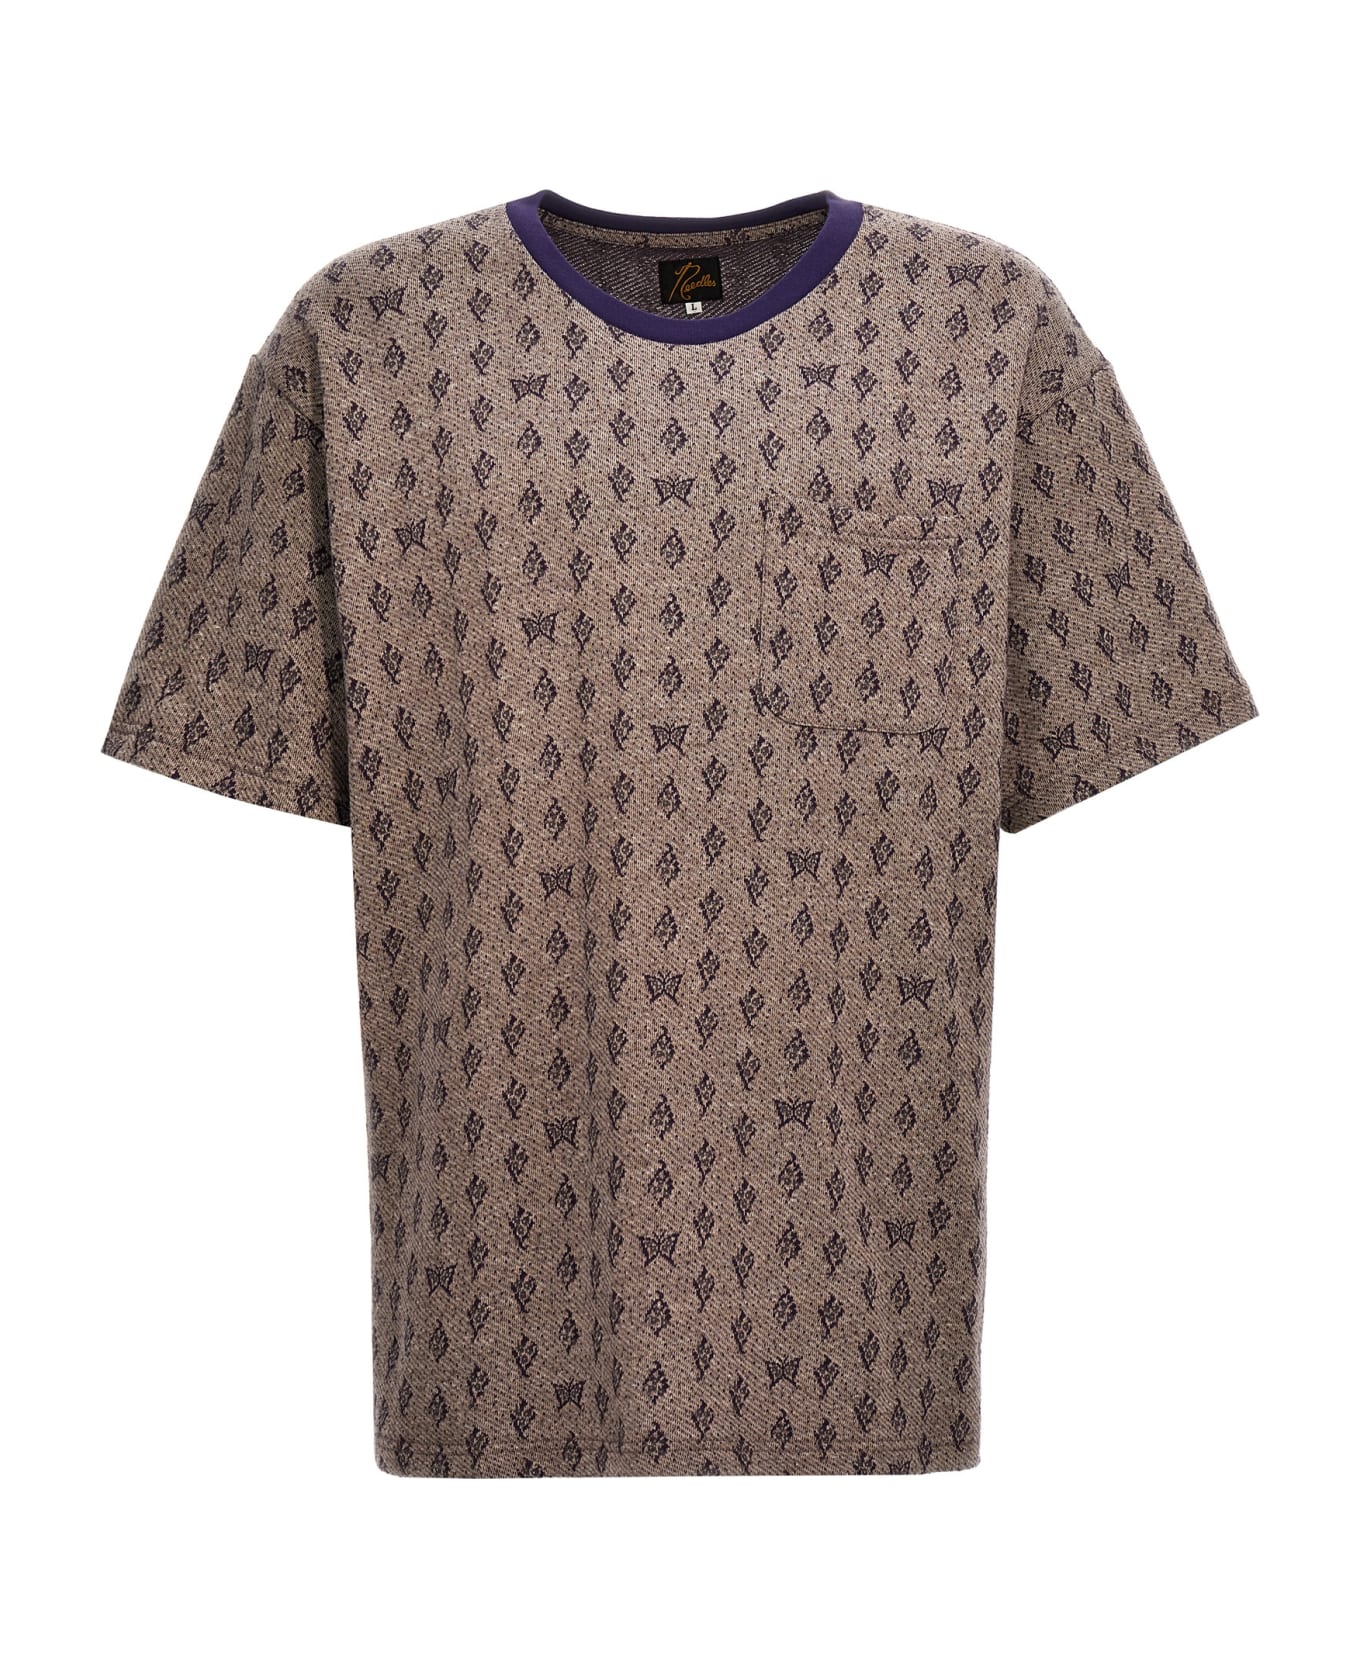 Needles Jacquard Patterned T-shirt - Purple